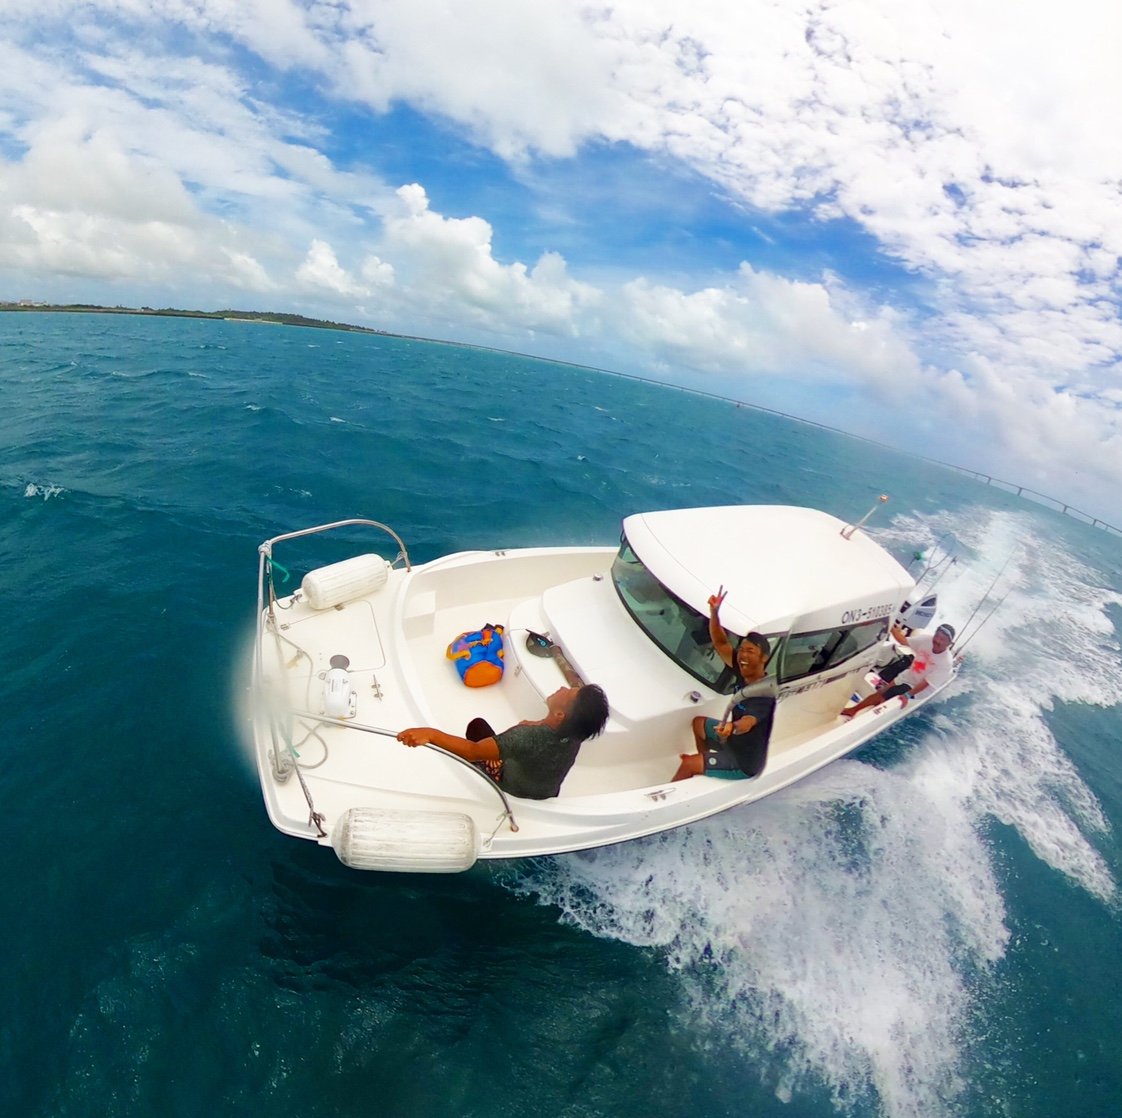 宮古島でボートクルーズの島遊びツアーを開催しているプレイン・ソレイユです
宮古島の海と空を五感で感じることができる特別な時間を宮古出身の船長が楽しくご案内いたします。パイナガマビーチ横の港から出発です！
太陽がいっぱい合同会社
#宮古島 #ボート #SUP  #釣り #シュノーケリング